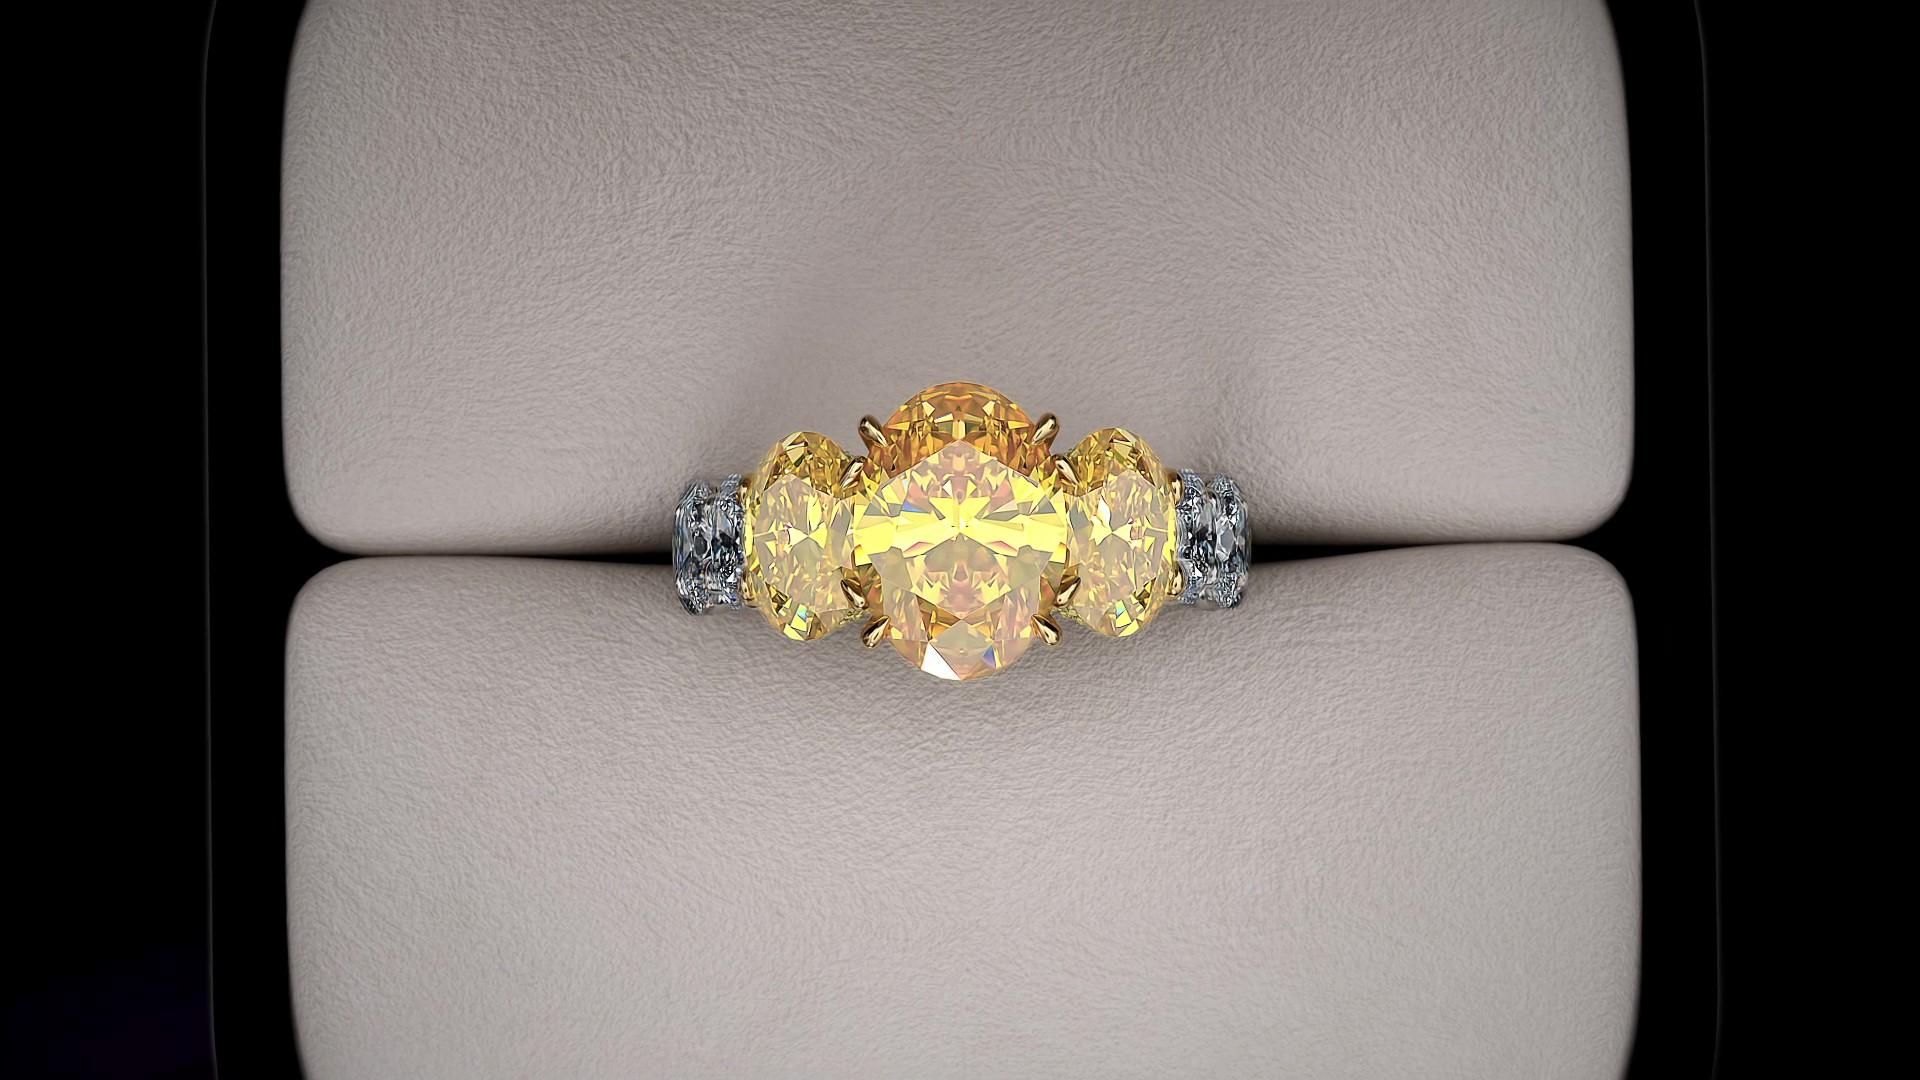 GIA-zertifiziert 5,11 Karat insgesamt Vivid Yellow Intense Oval Diamanten, Klarheit zwischen VVS und VS, satte gelbe Farbe, keine Fluoreszenz, fünf abgestufte Diamanten, in 18 Karat Gelbgold und Platin, und ca. 3,6 Karat weiße ovale Diamanten, G